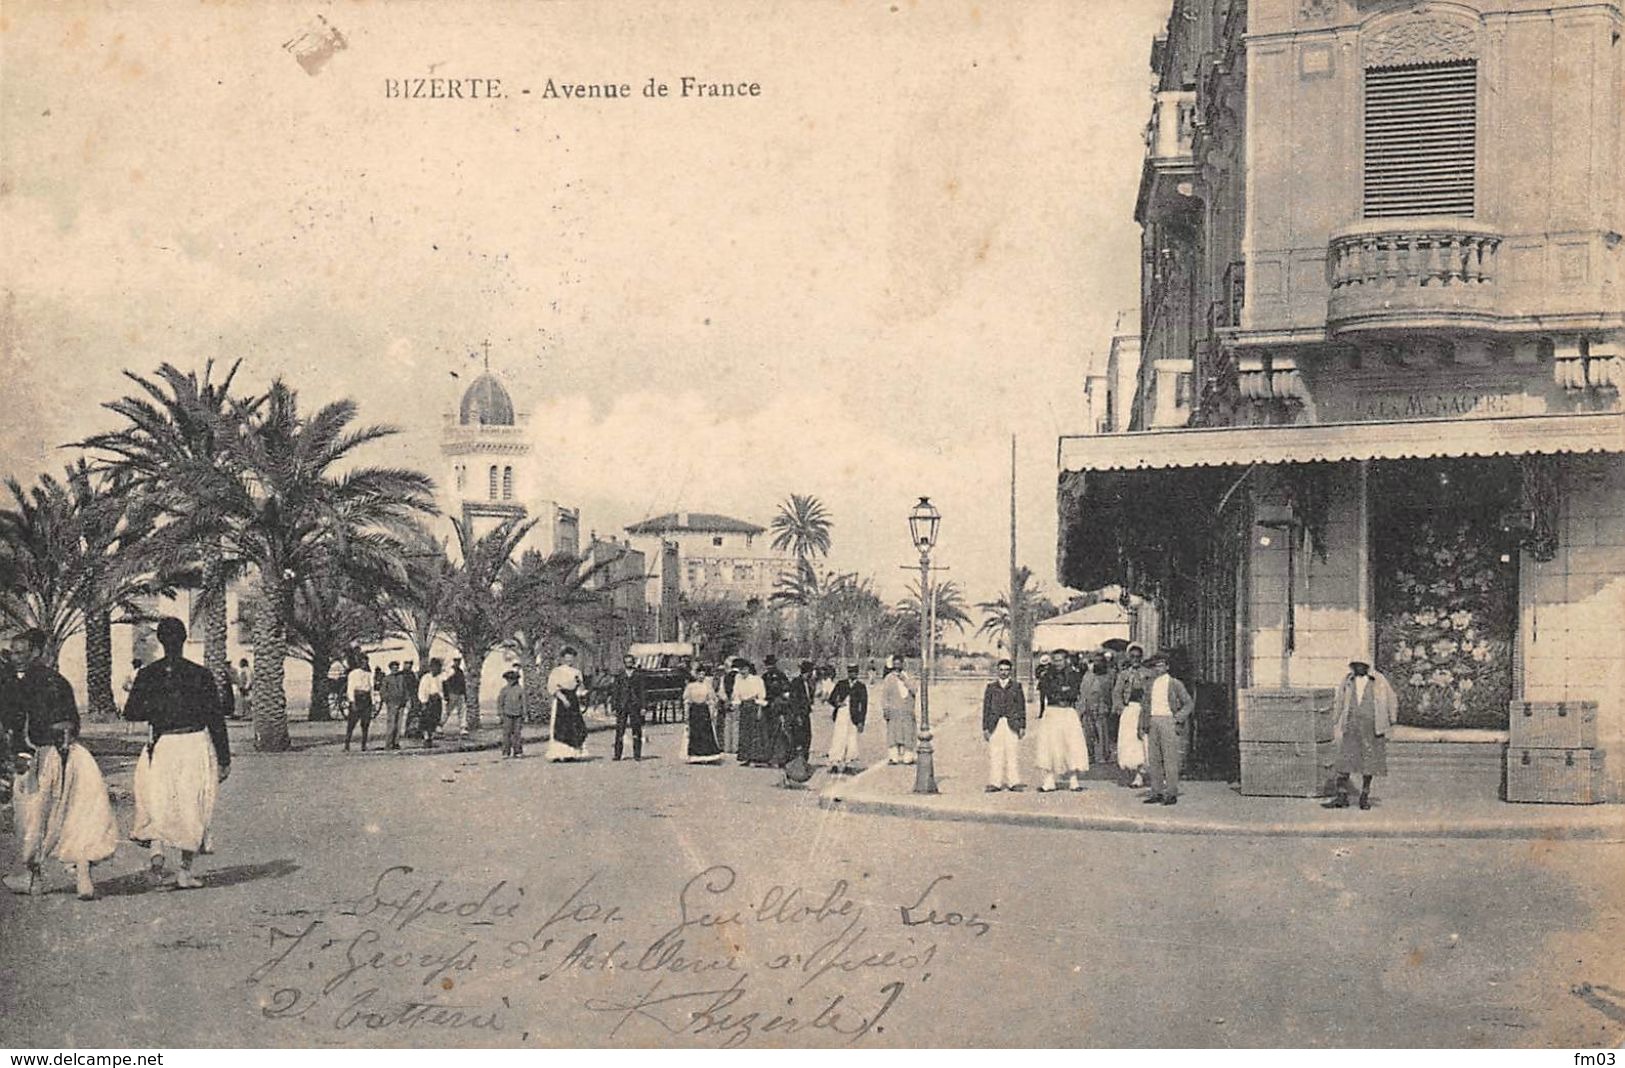 Bizerte - Tunisia